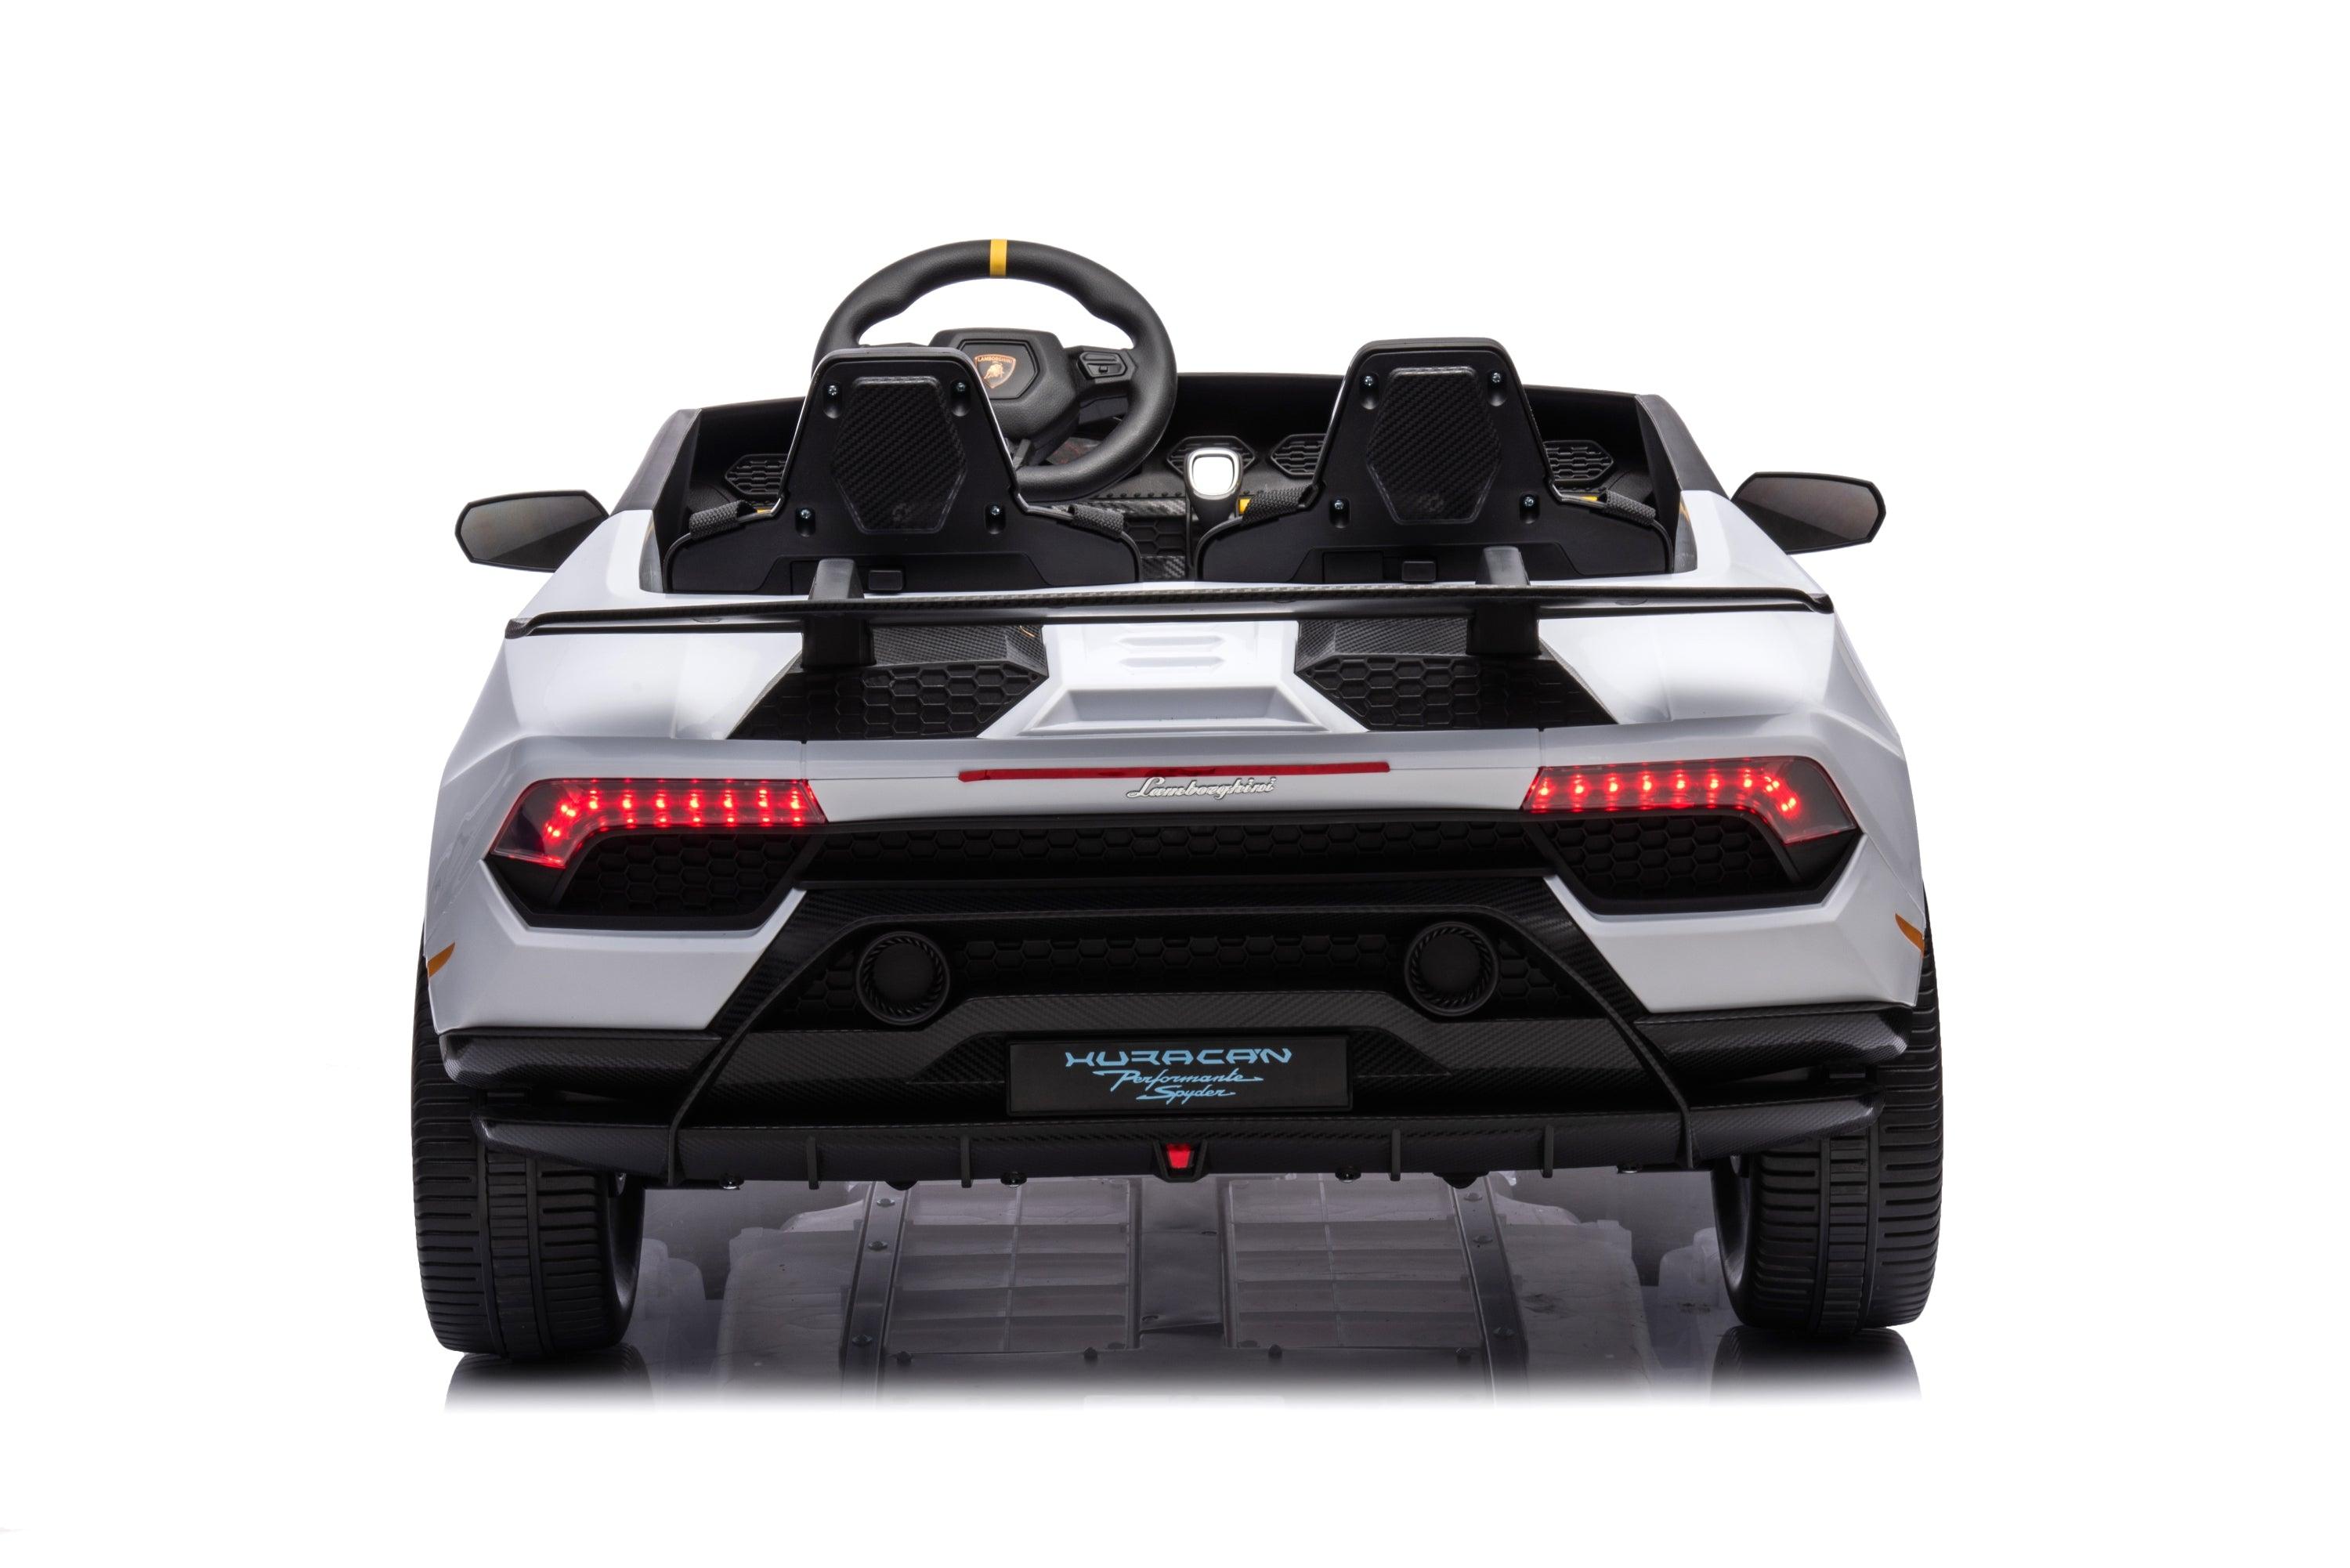 24V Lamborghini Huracan 2 Seater Kids' Electric Ride-On